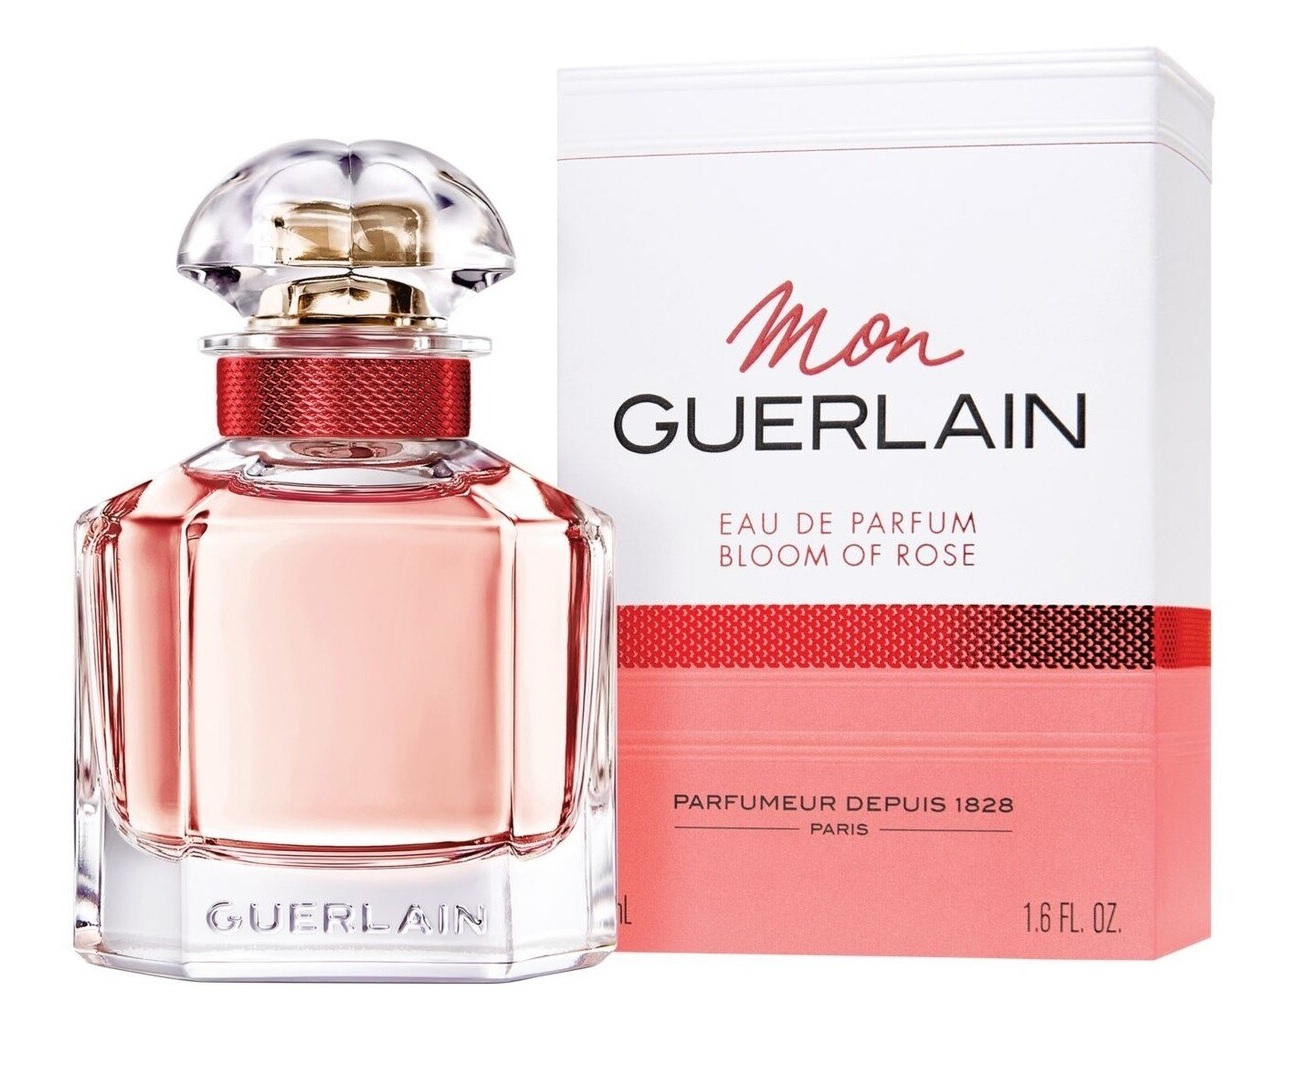 guerlain perfume bloom of rose